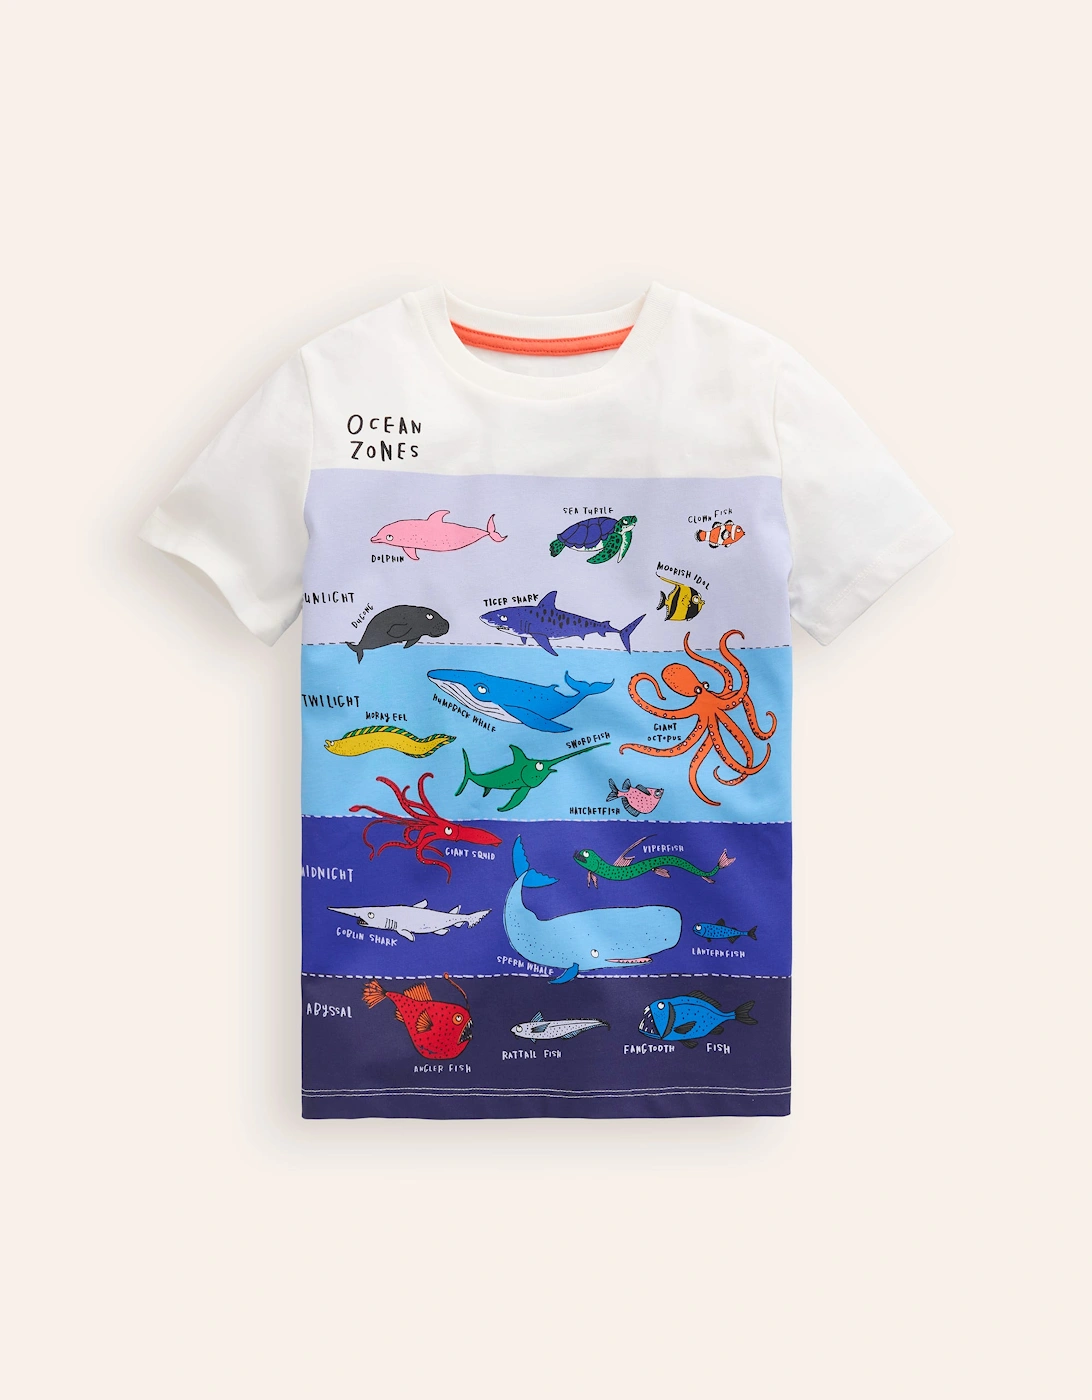 Ocean Zones Printed T-Shirt, 2 of 1